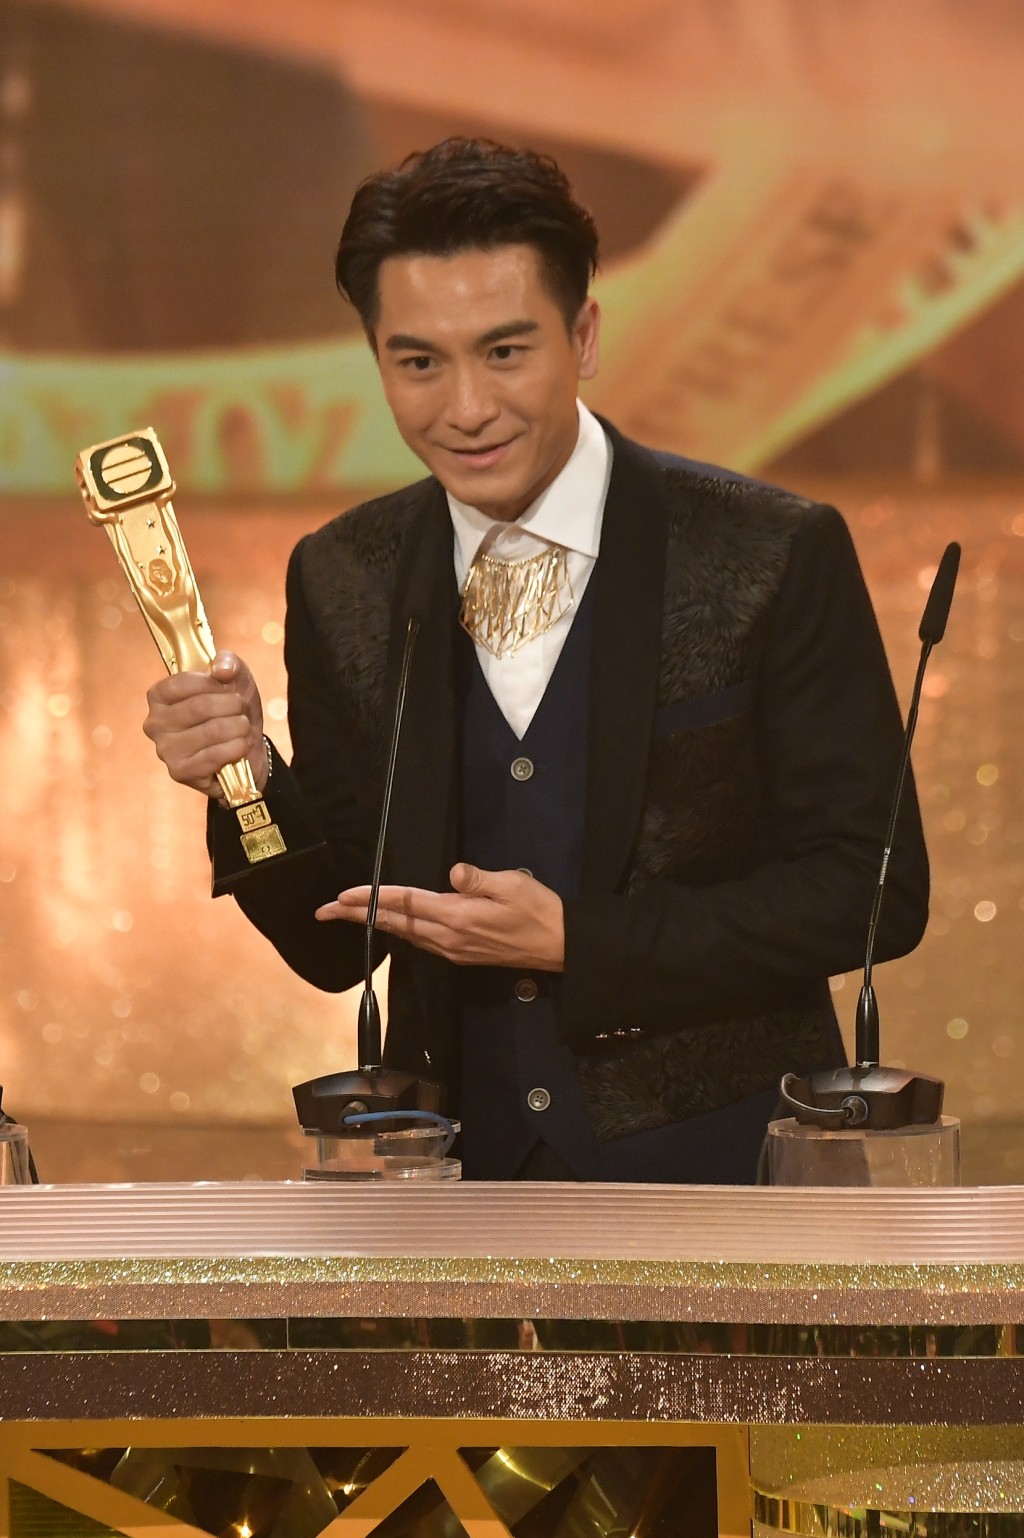 馬國明在《萬千星輝頒獎典禮2018》以《宮心計2深宮計》再獲「最受歡迎電視男角色」，亦是他第三度獲得此獎項。